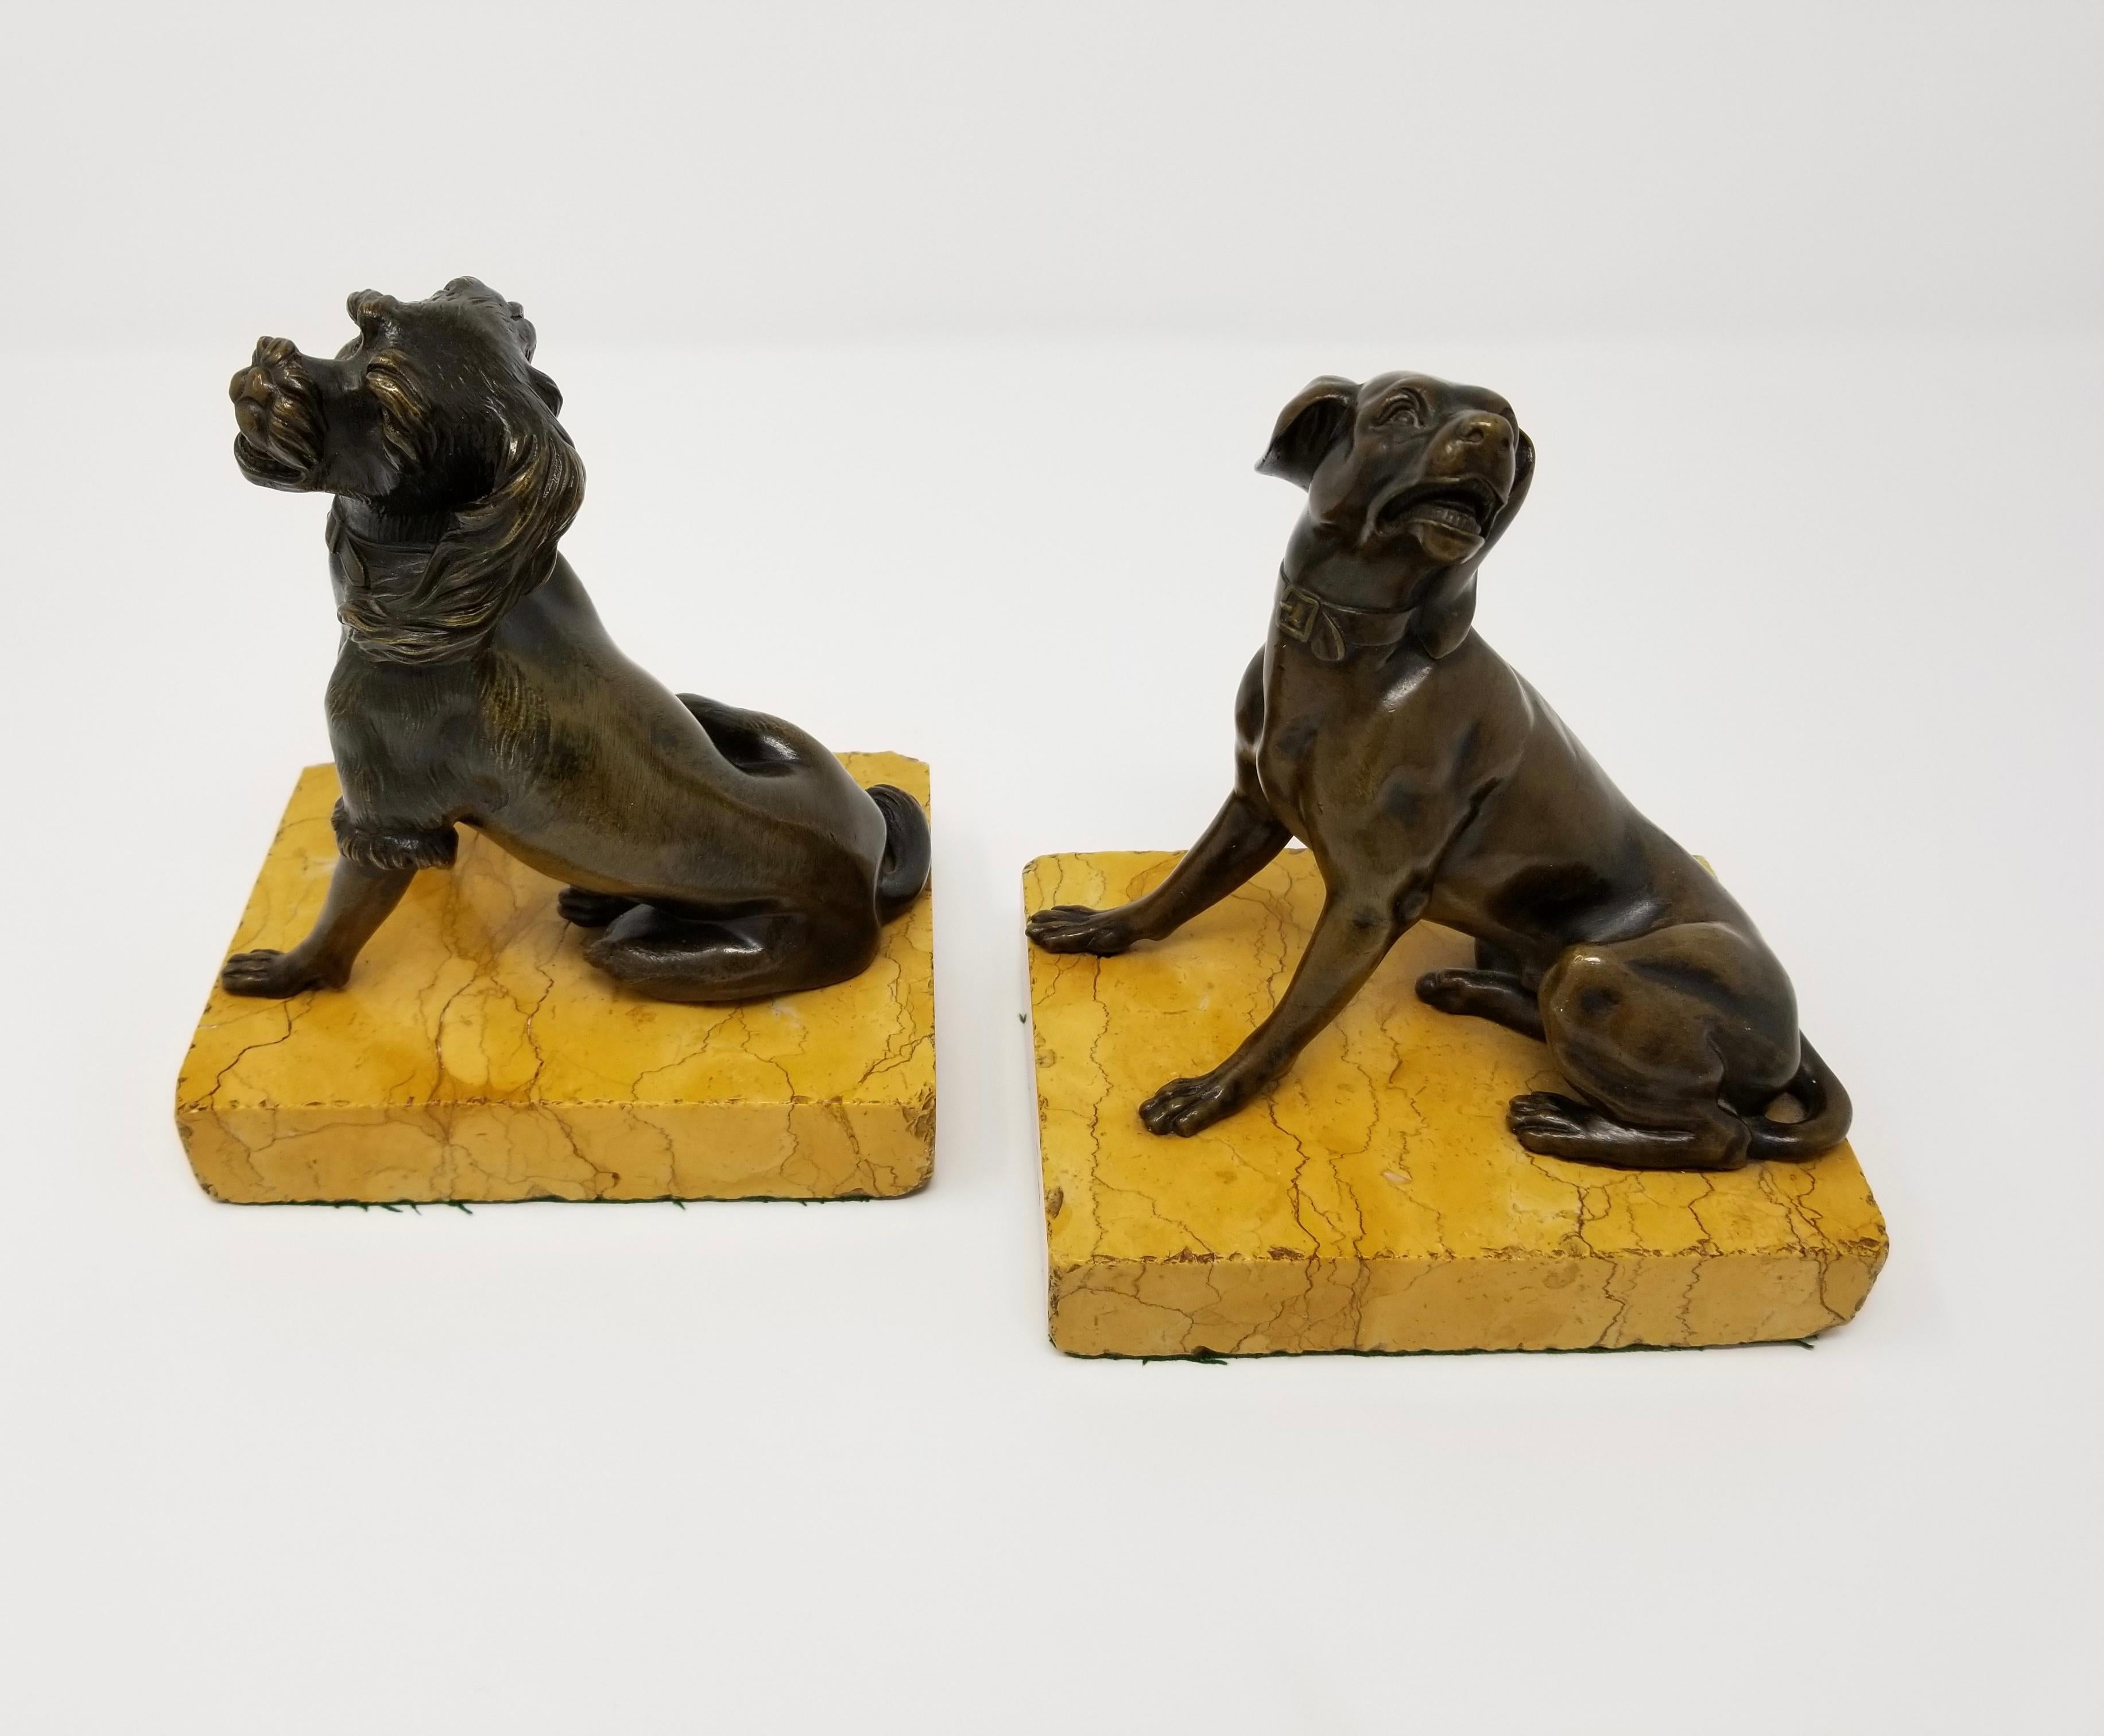 Ein schönes Paar antiker Hunde aus patinierter Bronze des 19. Jahrhunderts, die auf Sockeln aus Siena-Marmor sitzen. Jeder Hund ist wunderschön gegossen und in sorgfältiger Handarbeit ziseliert. Jeder Hund ist außerdem mit einer schönen braunen